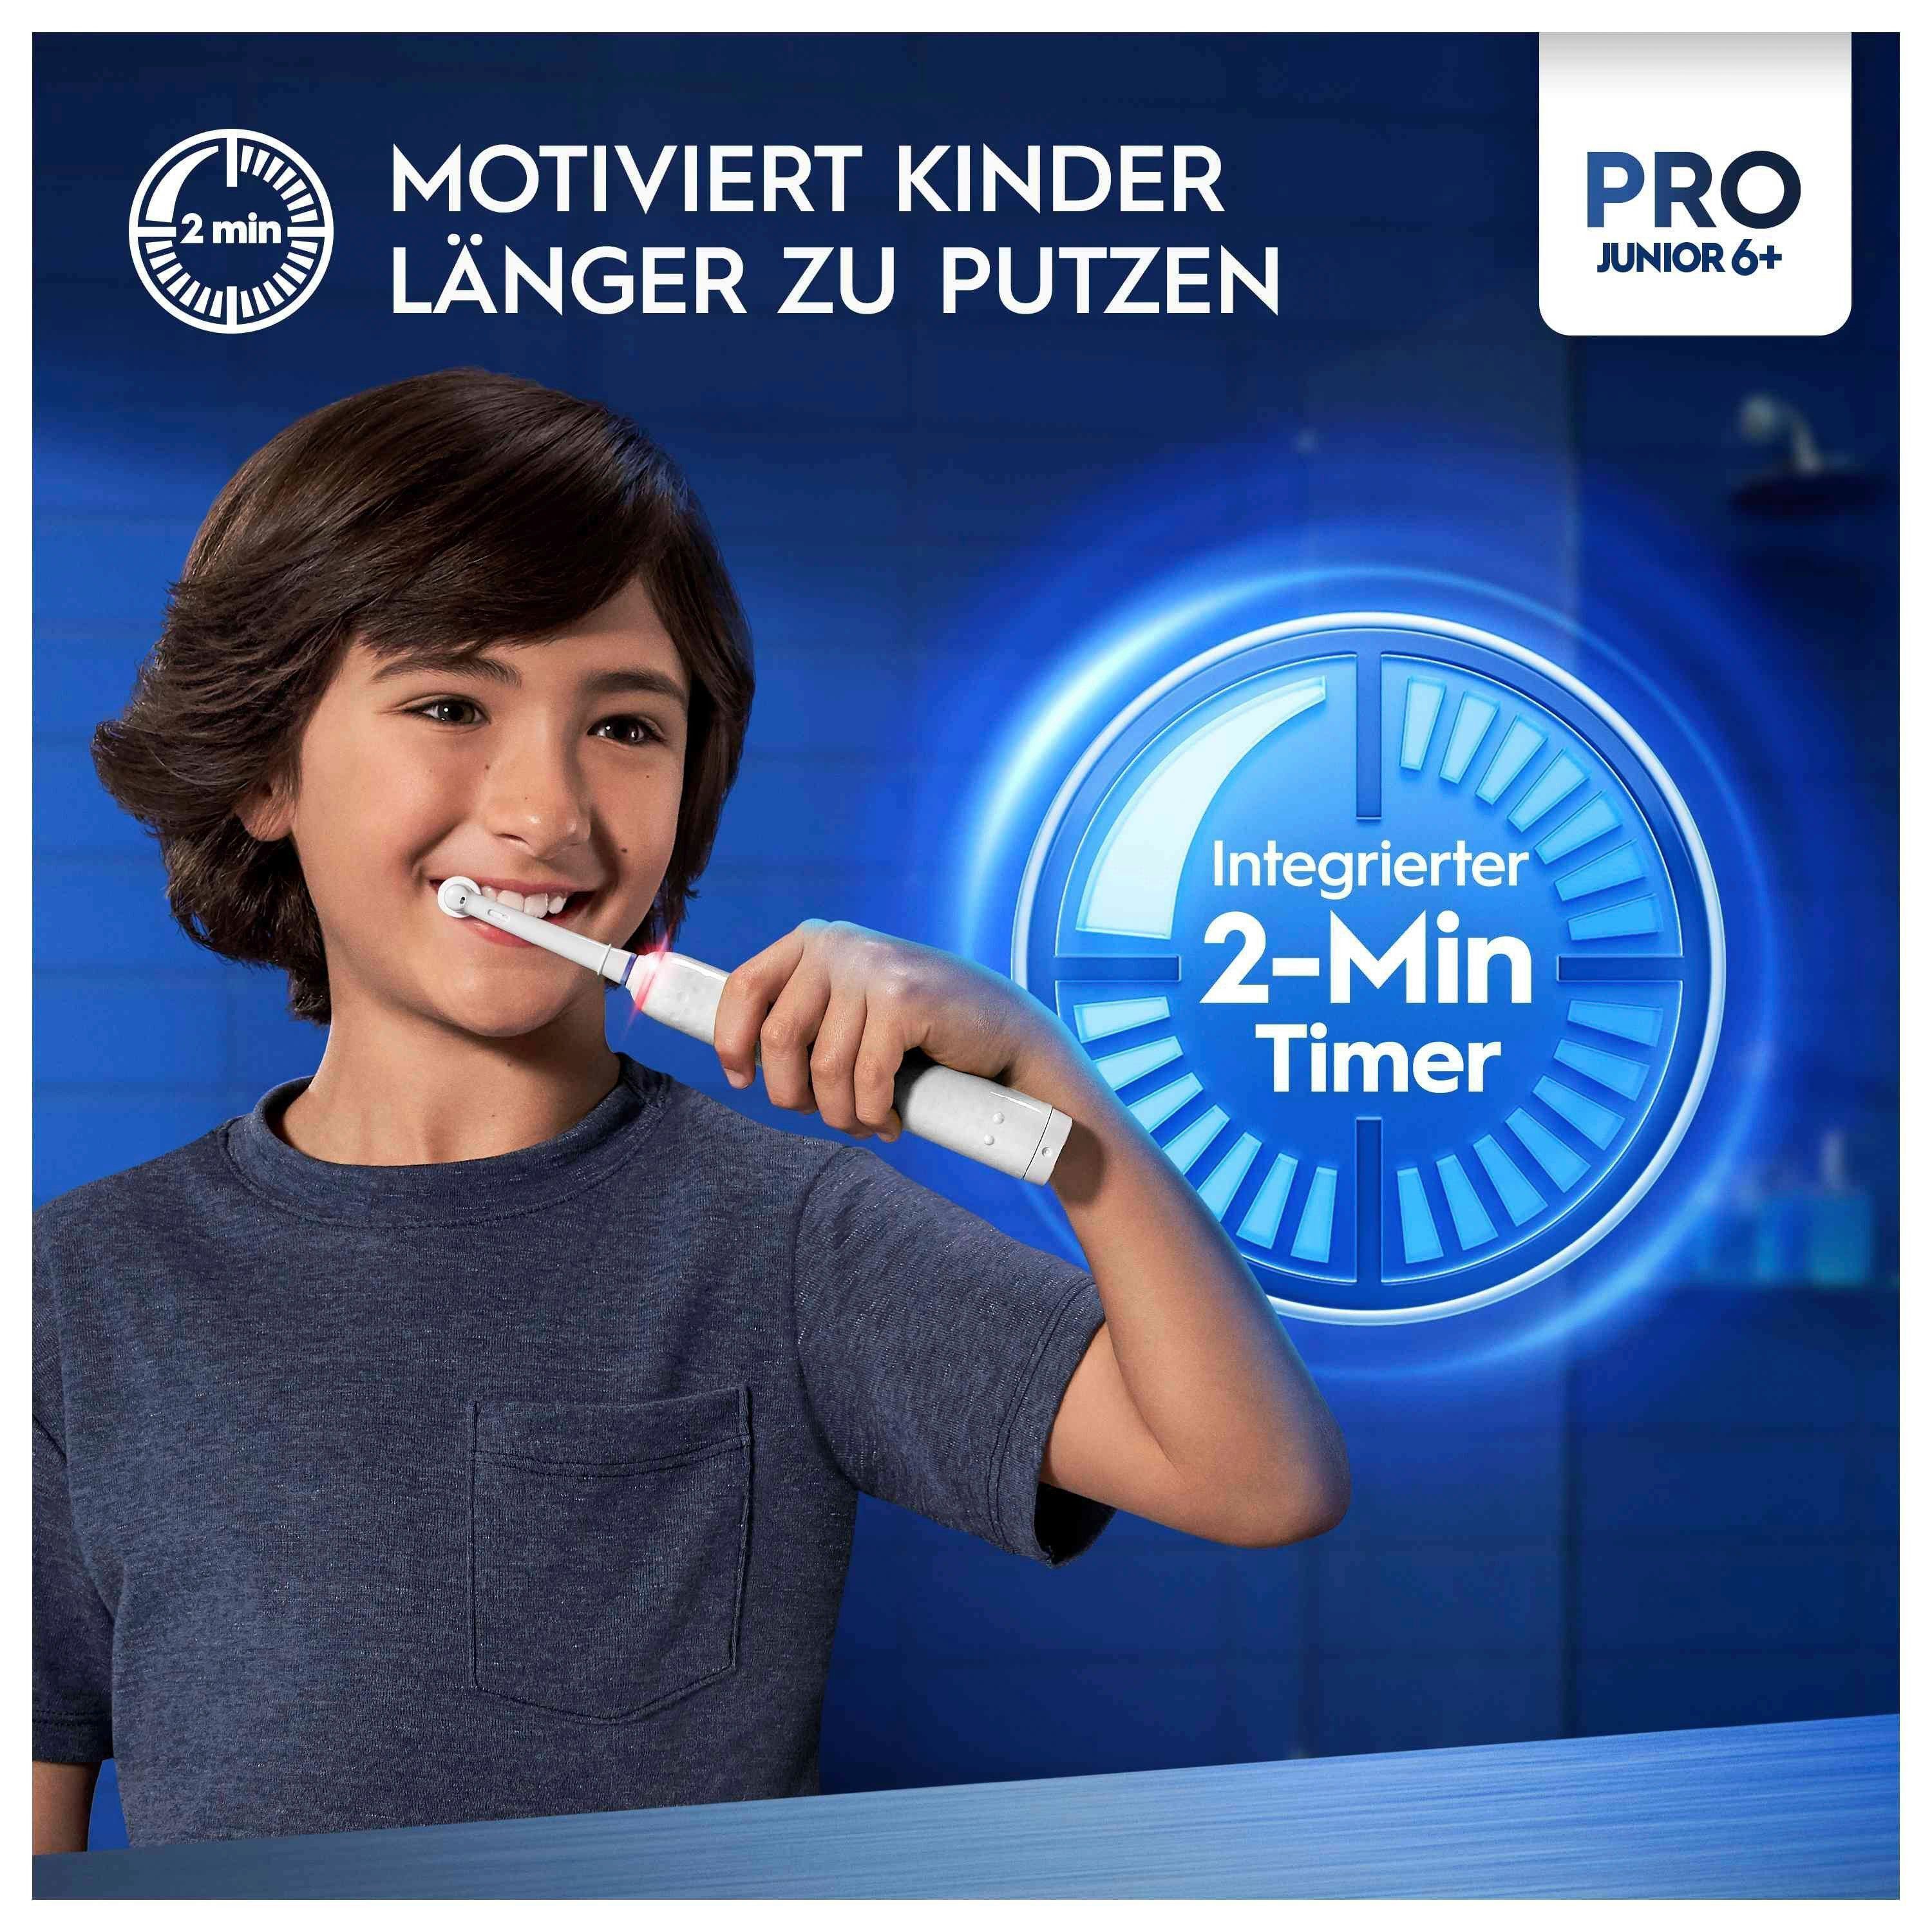 zu St., Elektrische Junior, länger Oral-B Pro Der Timer Drucksensor, Zahnbürste Aufsteckbürsten: integrierte motiviert putzen Kinder 2 2-Minuten